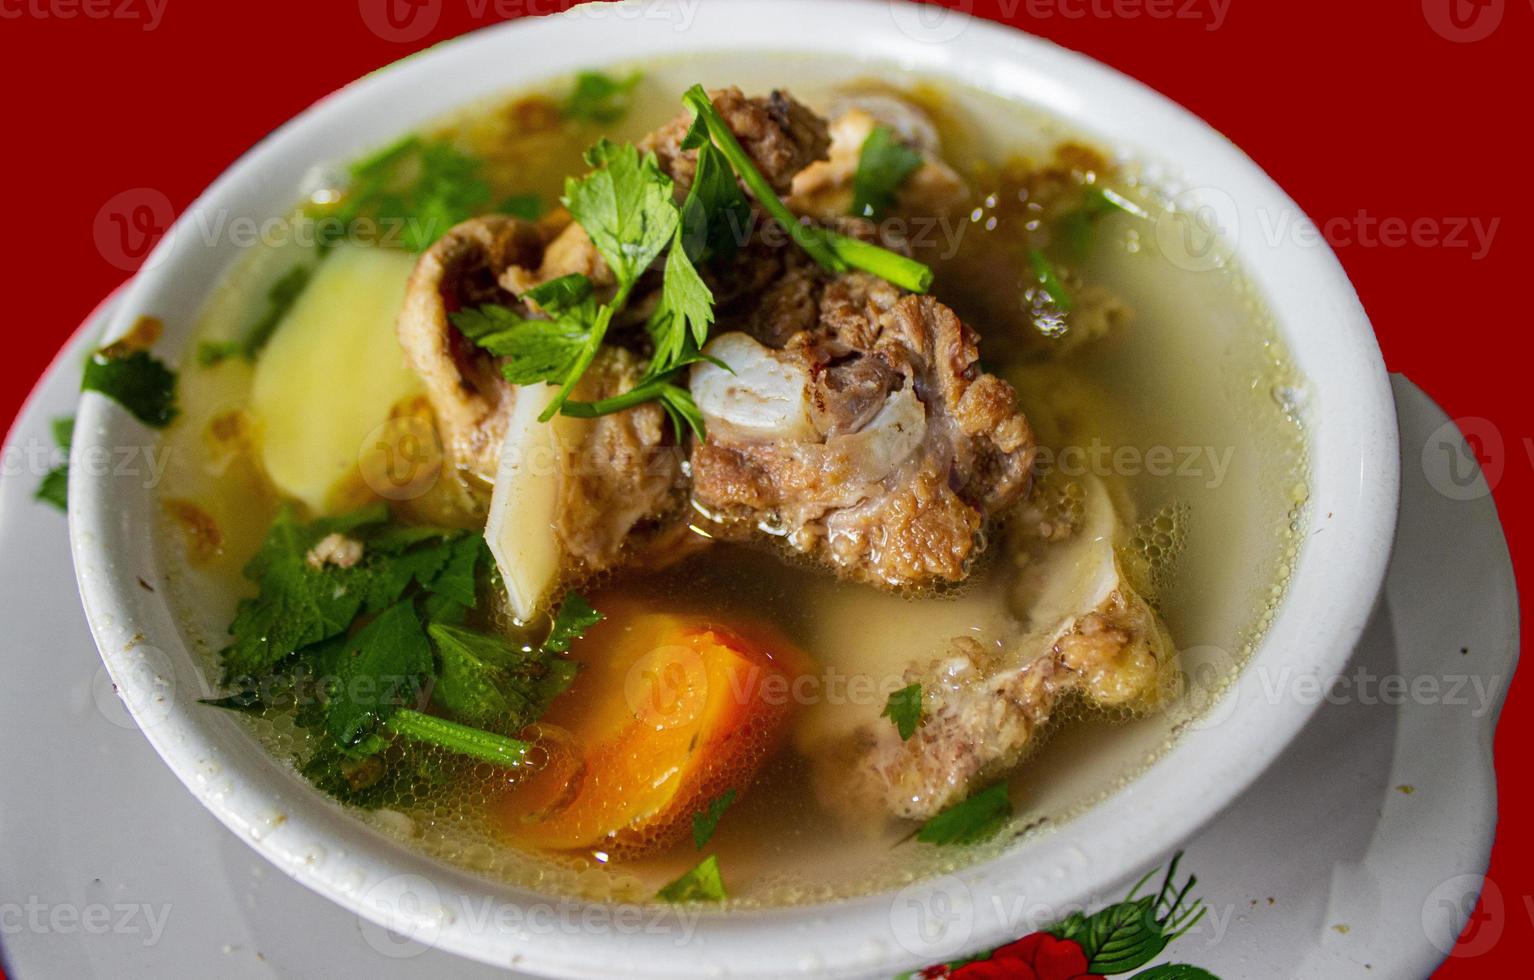 sop buntut o sopa de rabo de toro o sopa de rabo es una sopa tradicional hecha de rabo de buey, hervida con especias foto